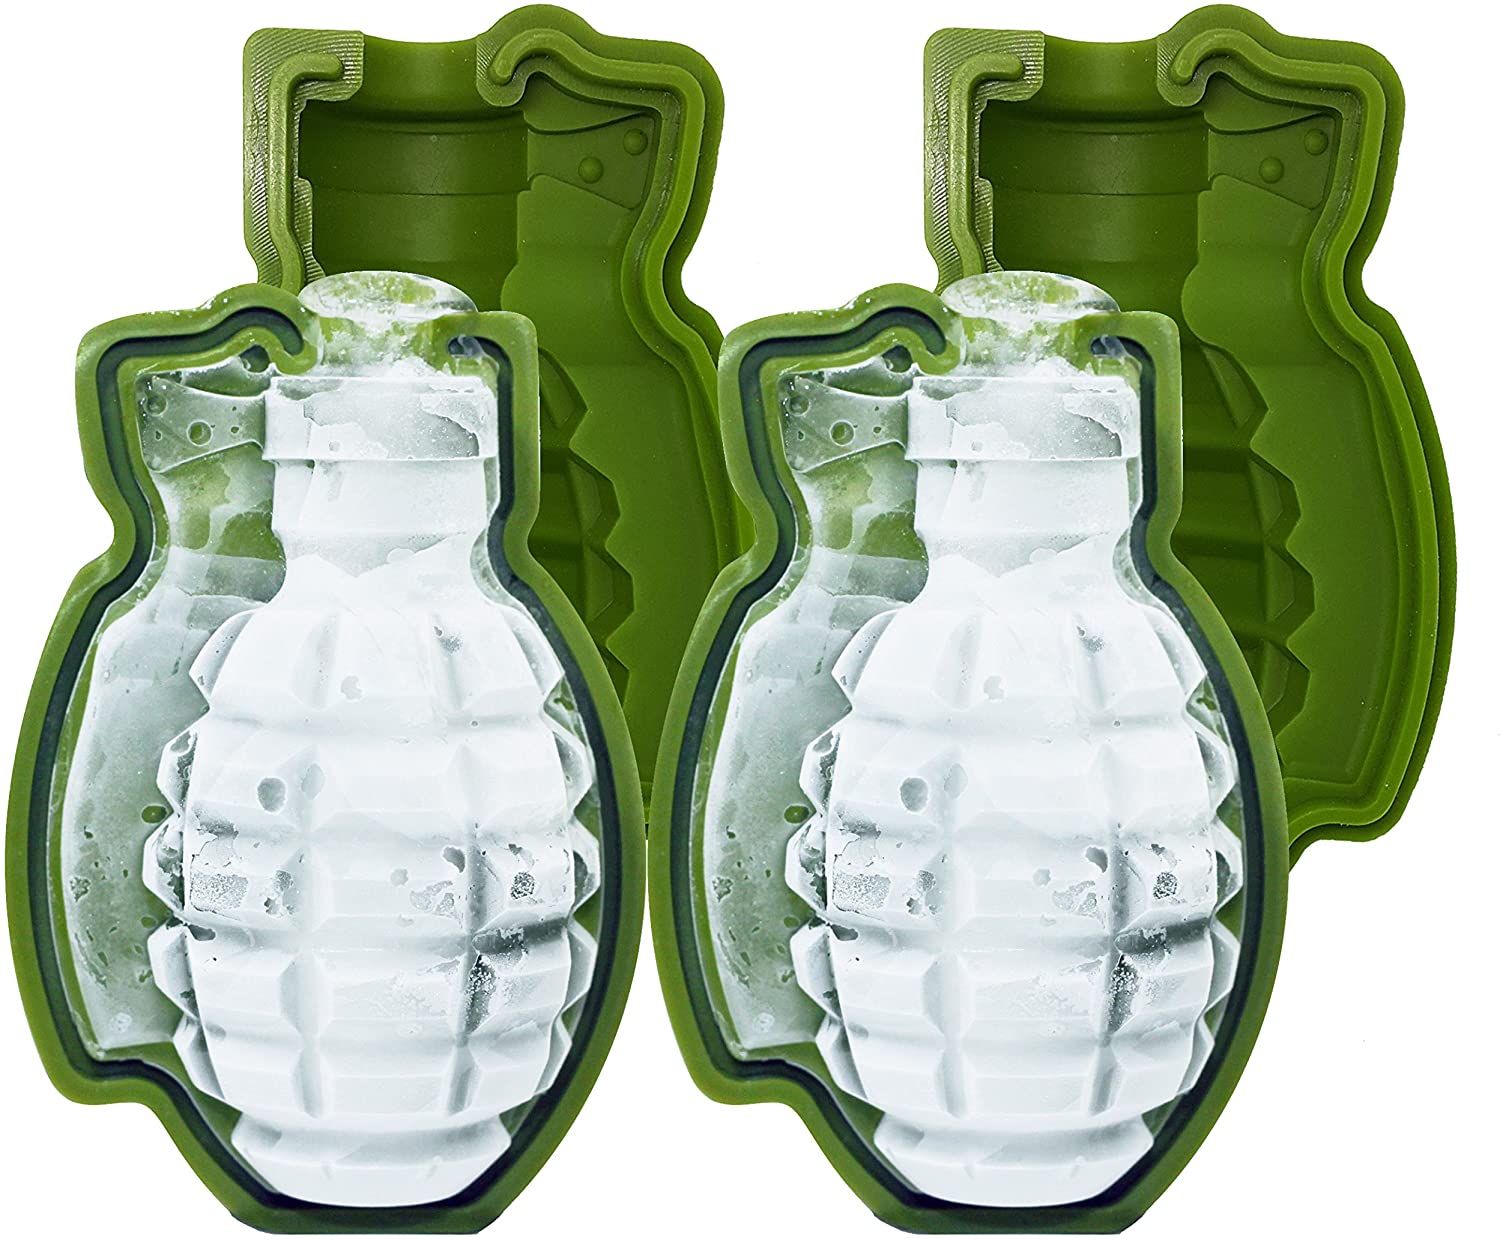 Silicon Grenade Mold Set